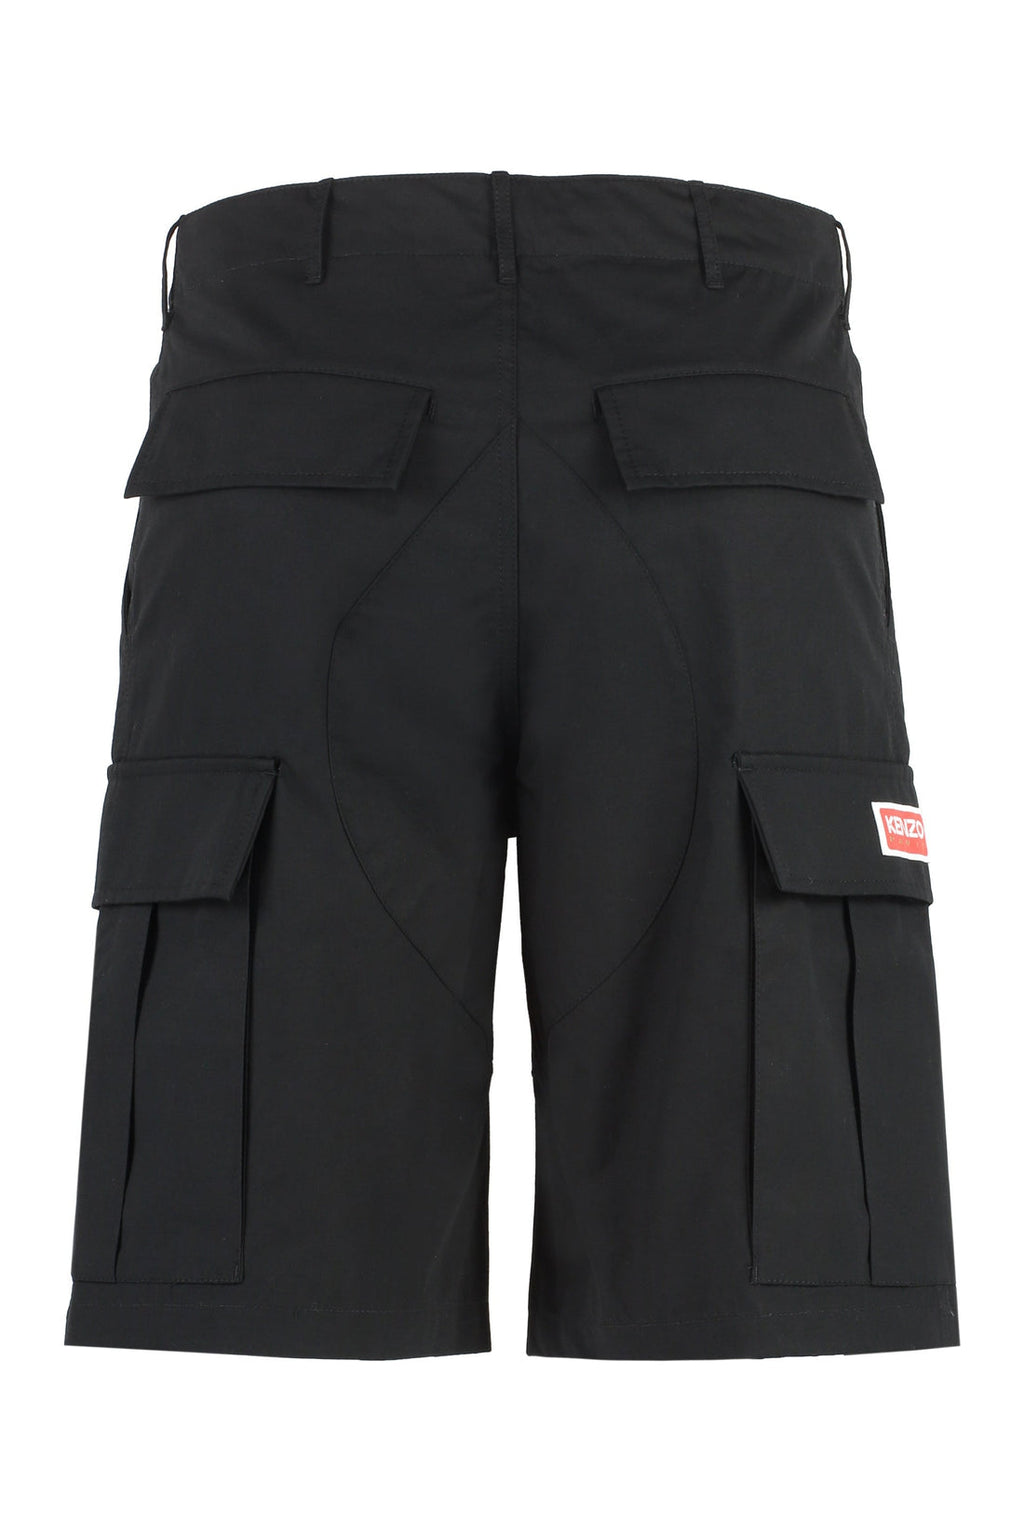 Kenzo-OUTLET-SALE-Cotton cargo bermuda shorts-ARCHIVIST